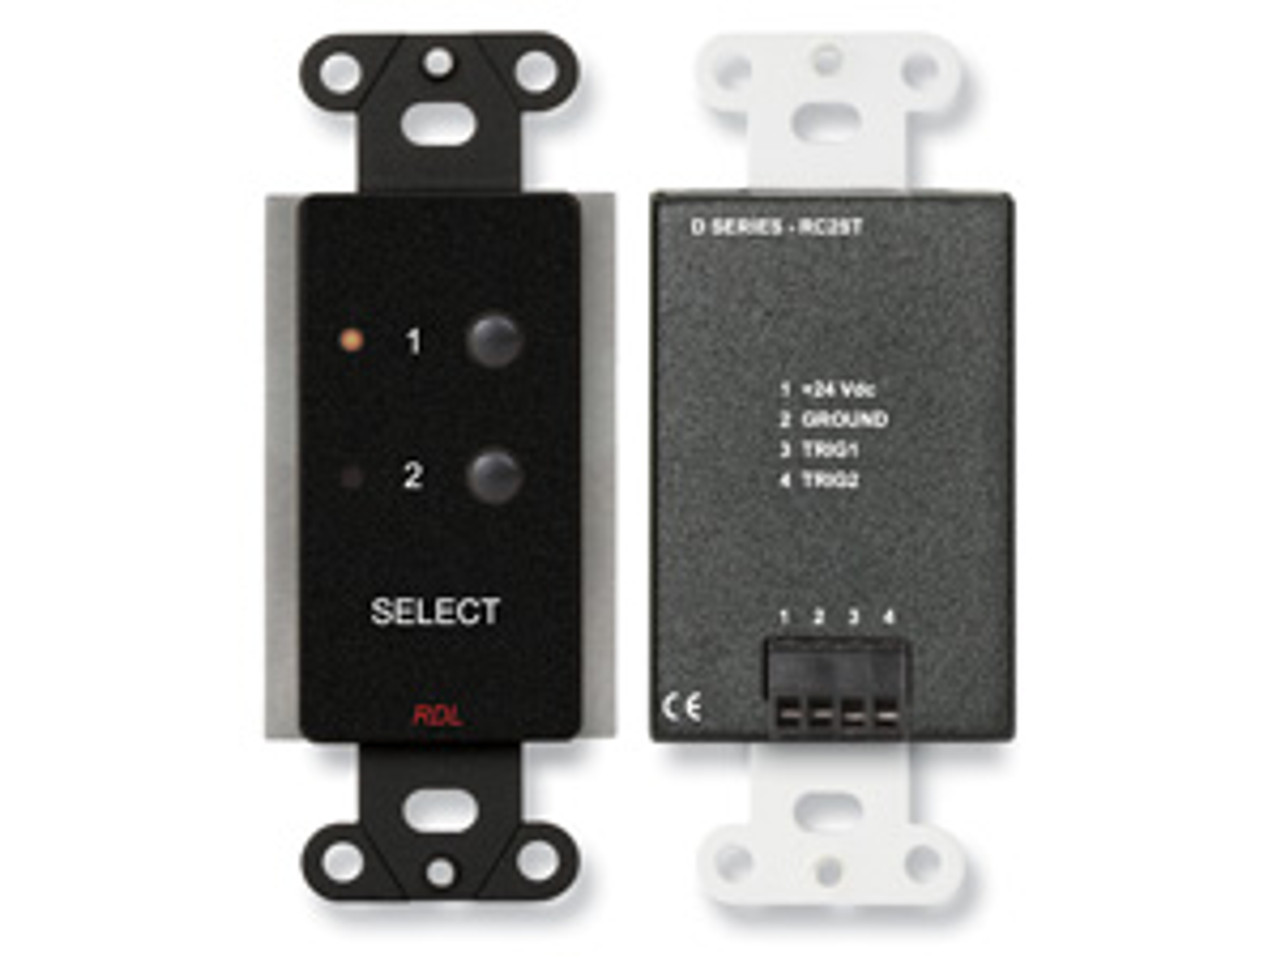 RDL D-RC2 Remote Audio Mixing Control (DRC2)